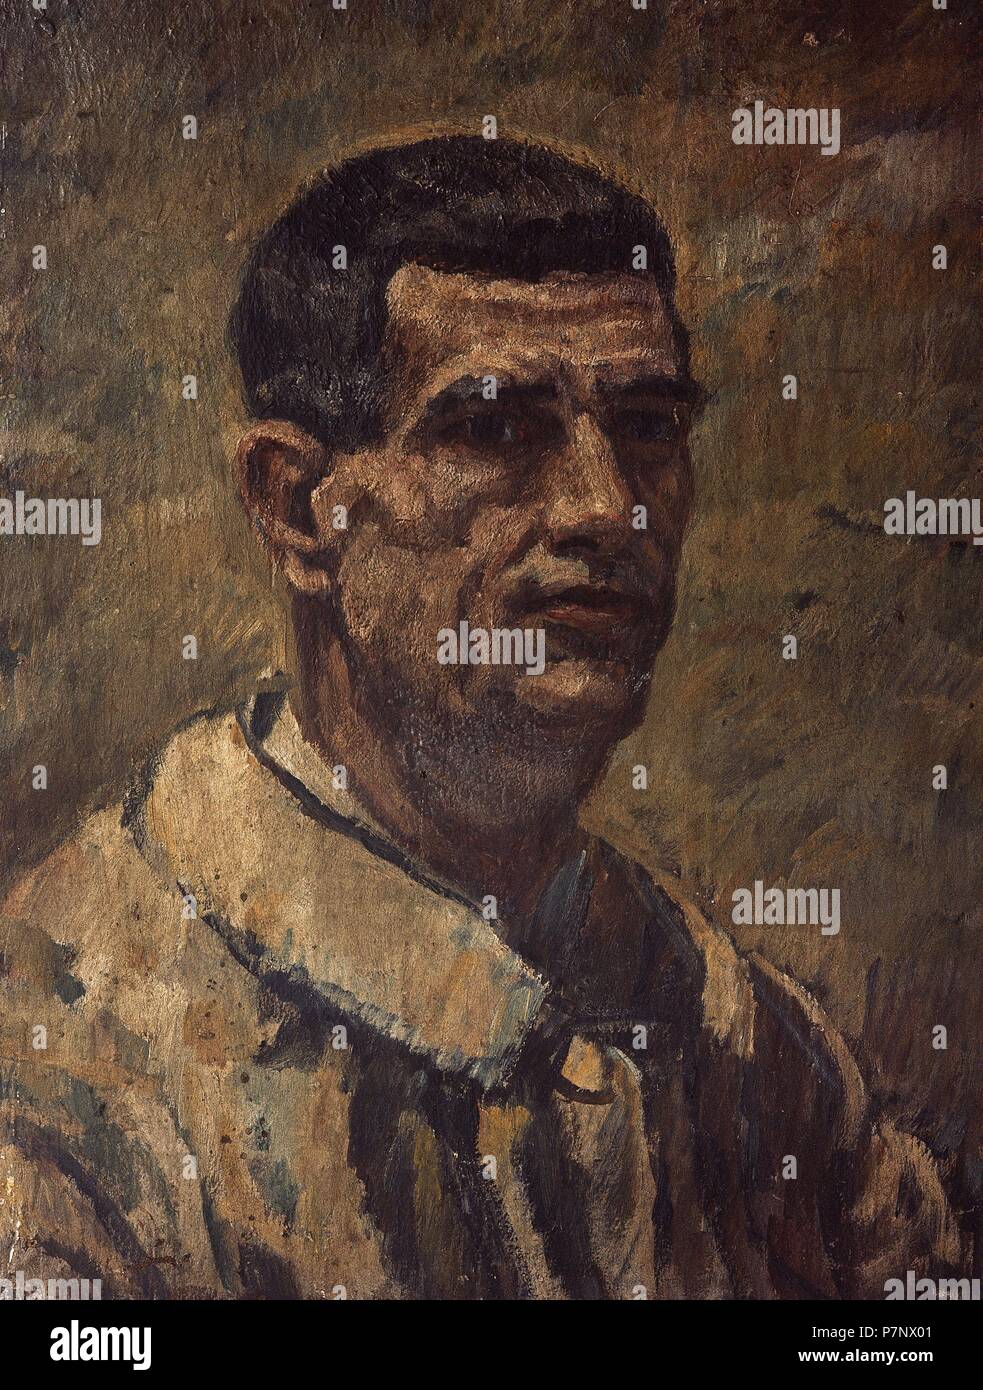 Francisco Iturrino (1864-1924). Spanische Post-Impressionisten Maler des Baskenlandes. Selbstporträt, 1900. Museo de Bellas Artes. Bilbao. Spanien. Stockfoto